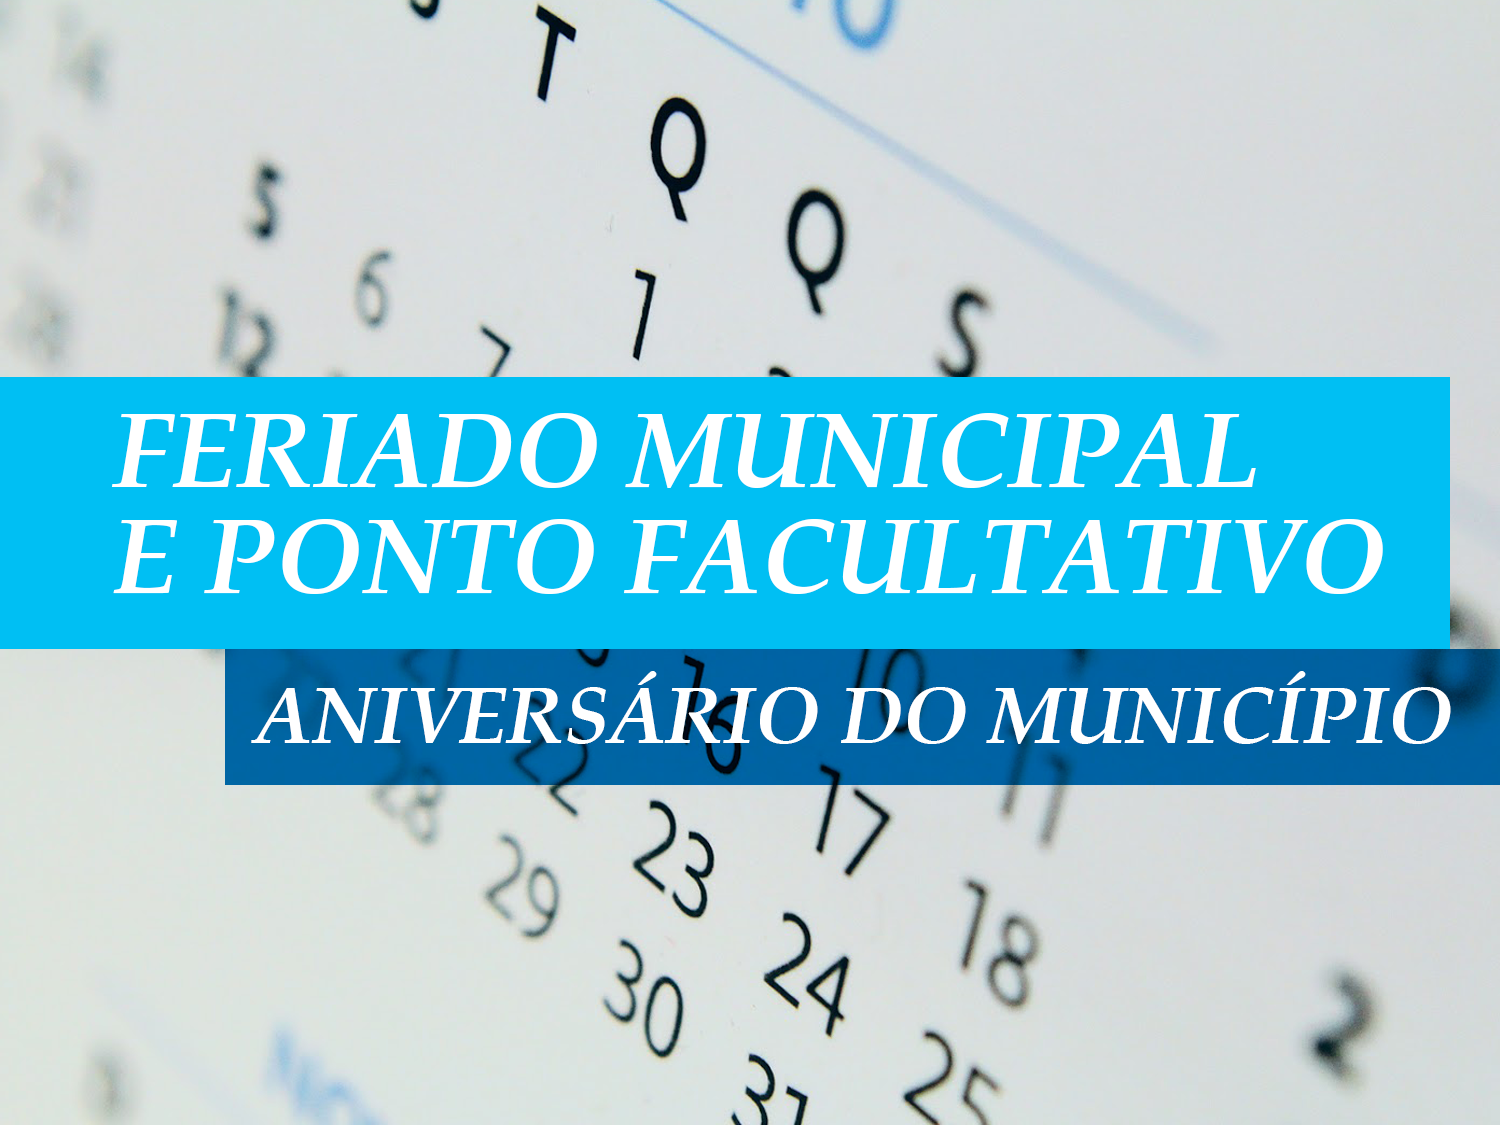 Dia de São Pedro, padroeiro da cidade, ponto facultativo e o aniversário de Vila Pavão, mexem com a rotina da Câmara Municipal nesta semana